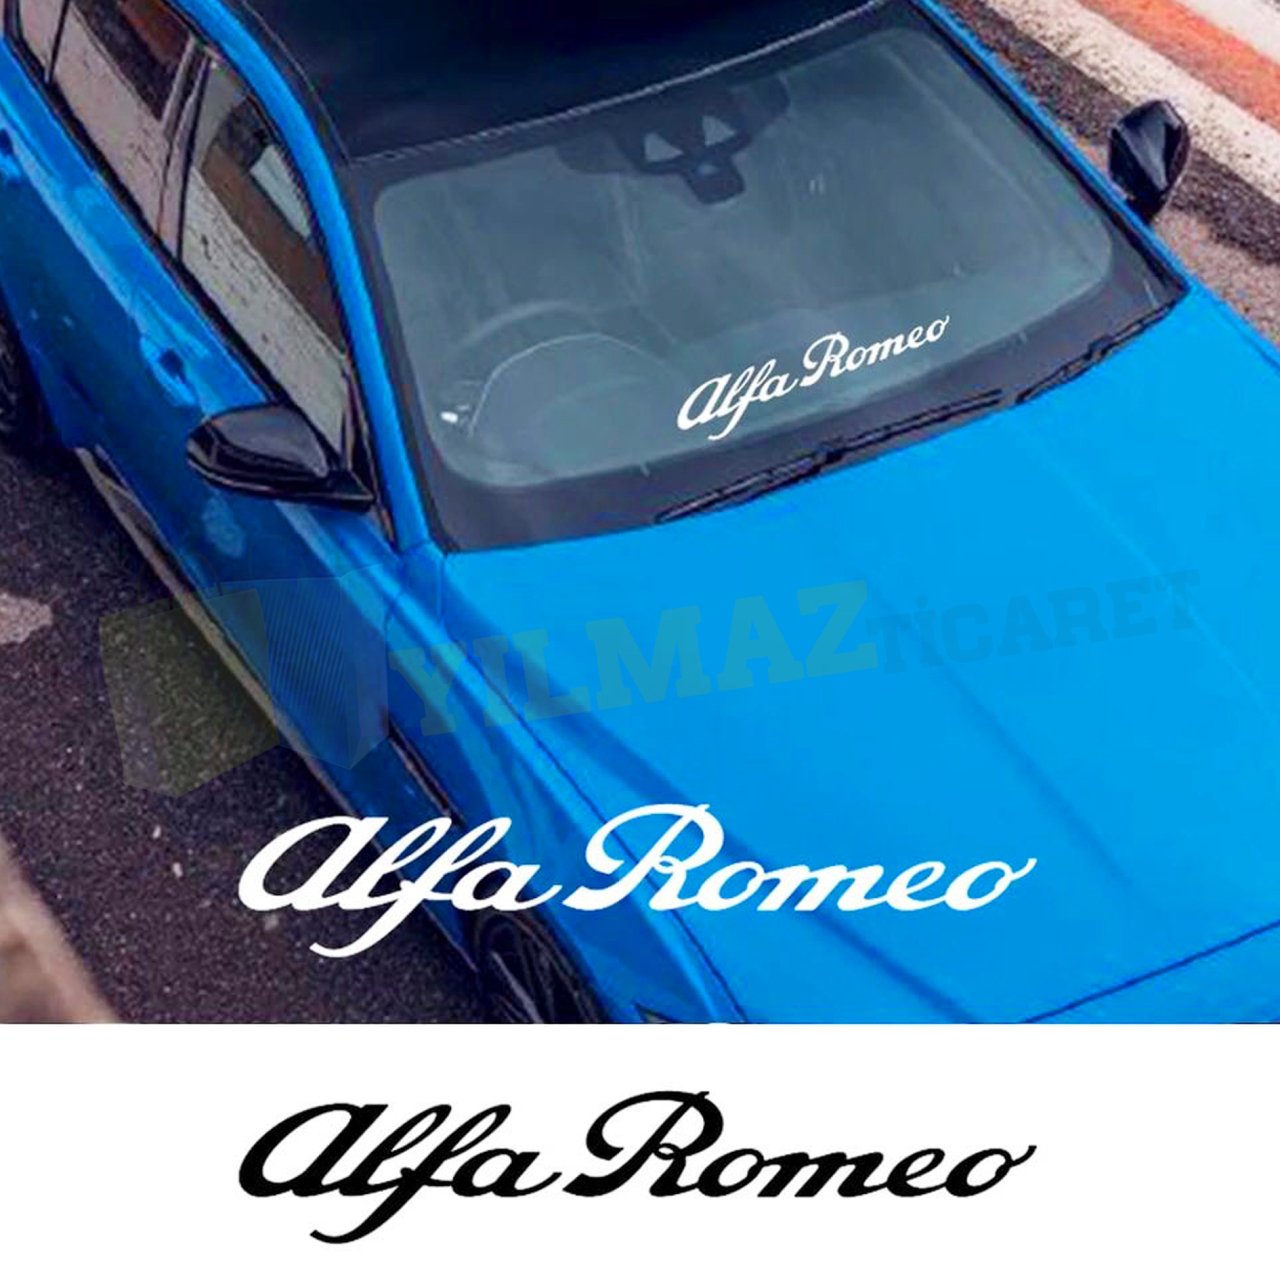 Alfa Romeo Yazı Ön Arka Cam Oto Sticker Araba Yapıştırma 1 Adet